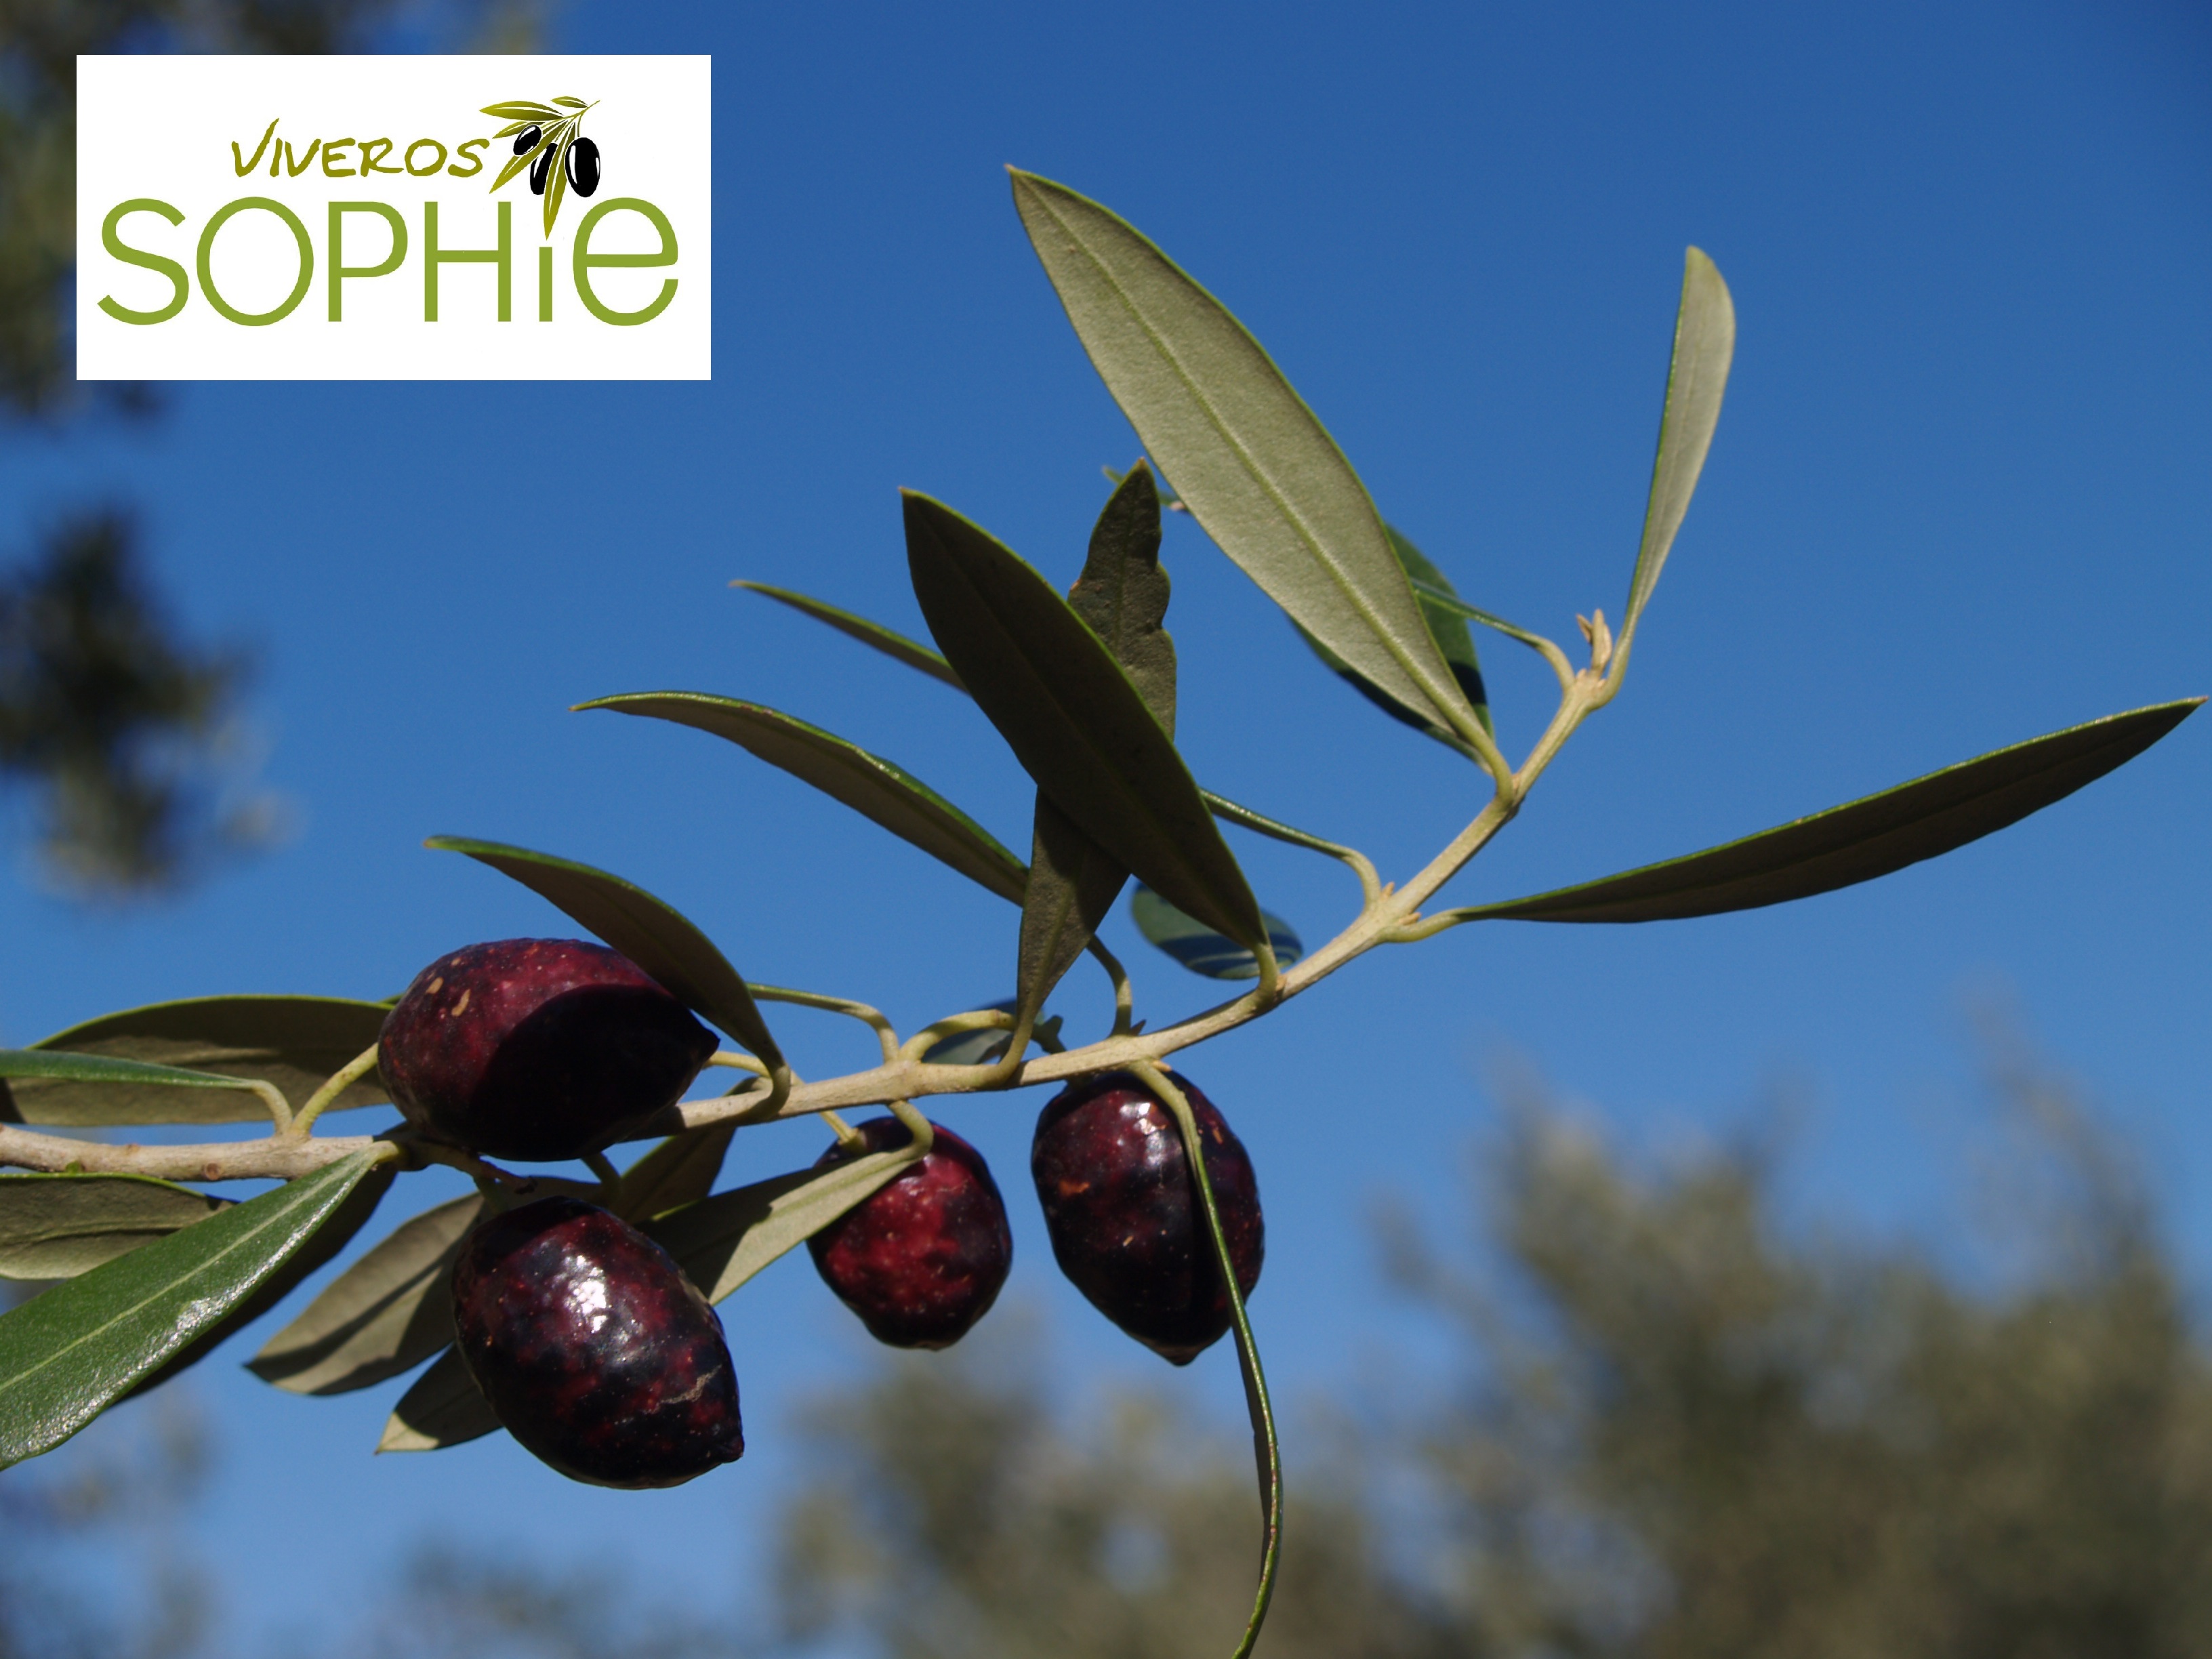 Variedad de olivo PECOSO